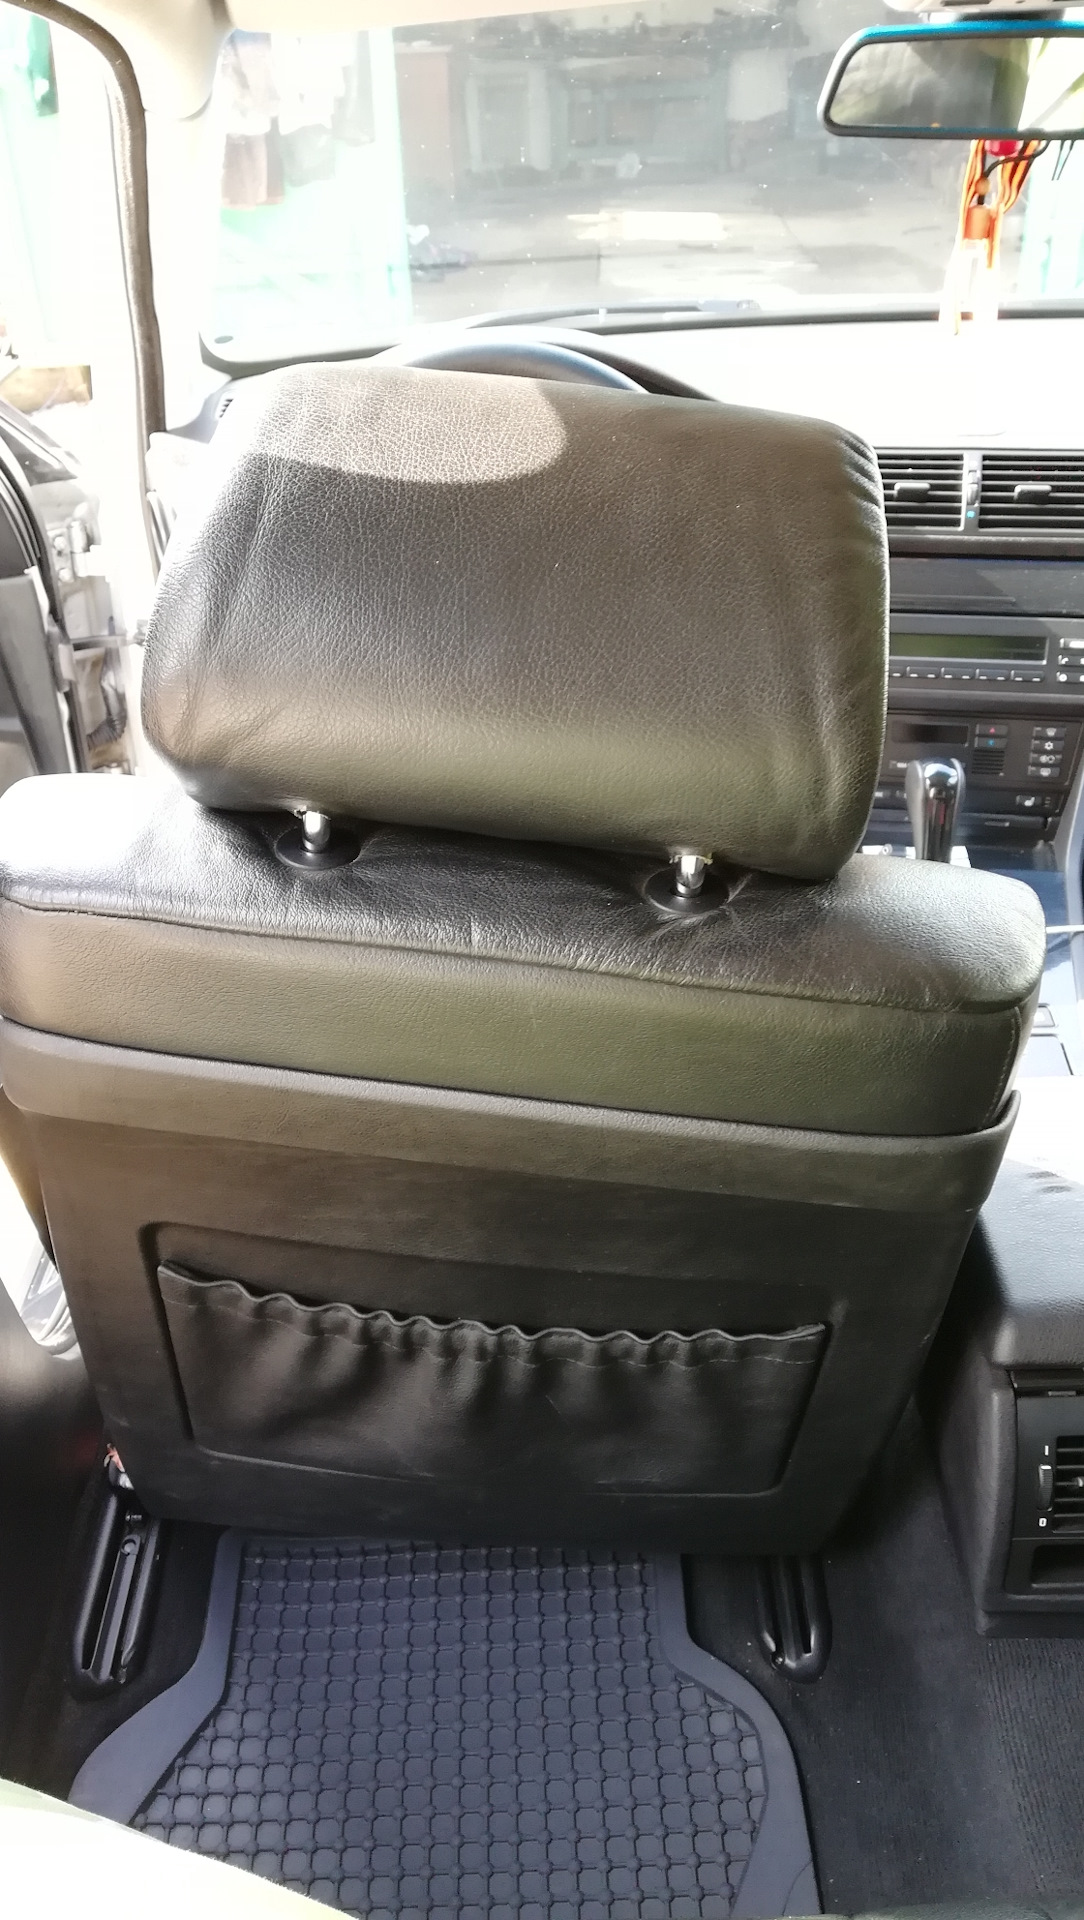 Водительское и пассажирское сиденье. Пассажирское сиденье. Вид с водительского сидения. Подушка в сидении пассажира.